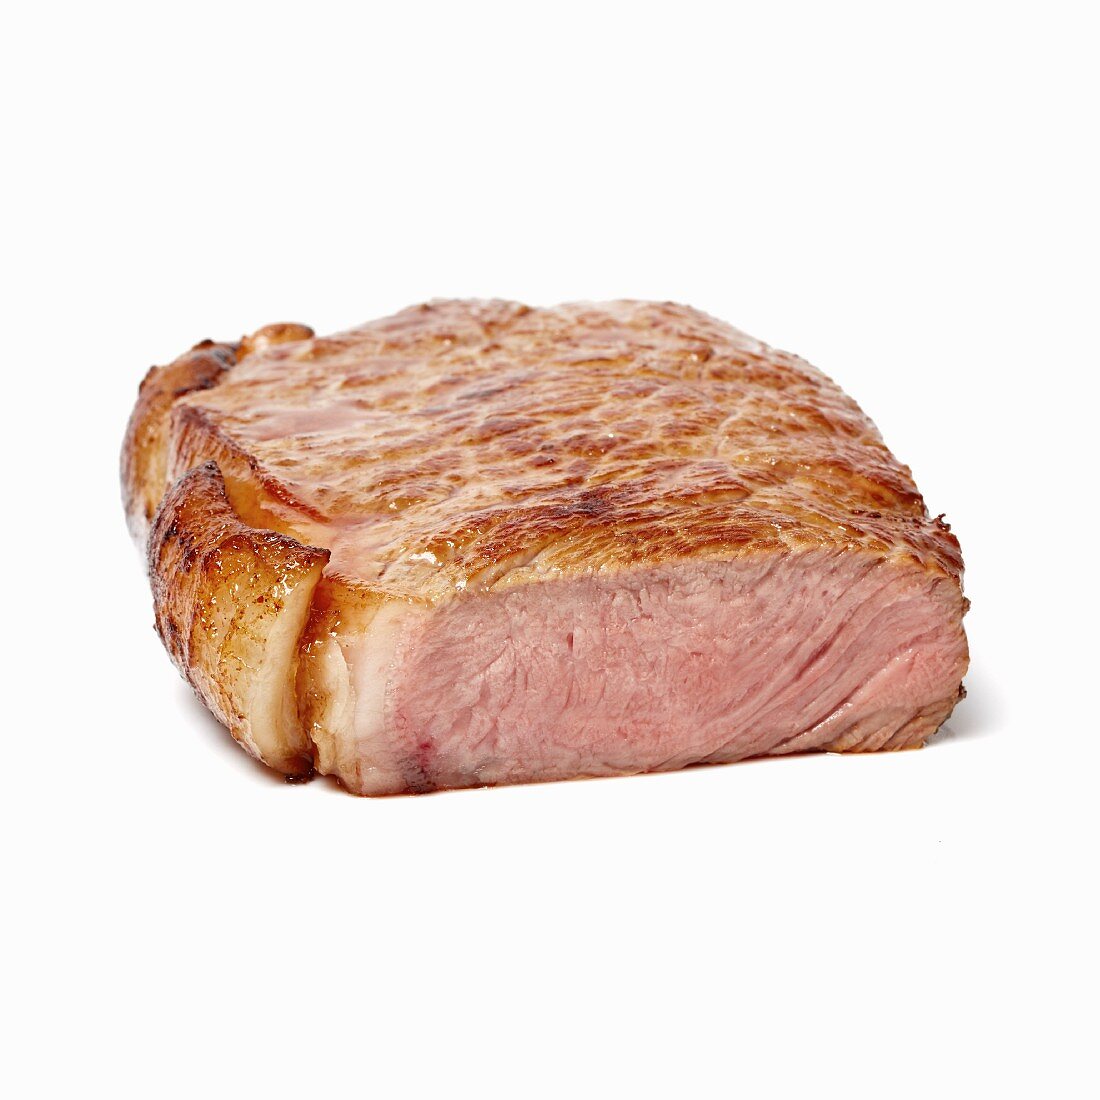 A well-done steak